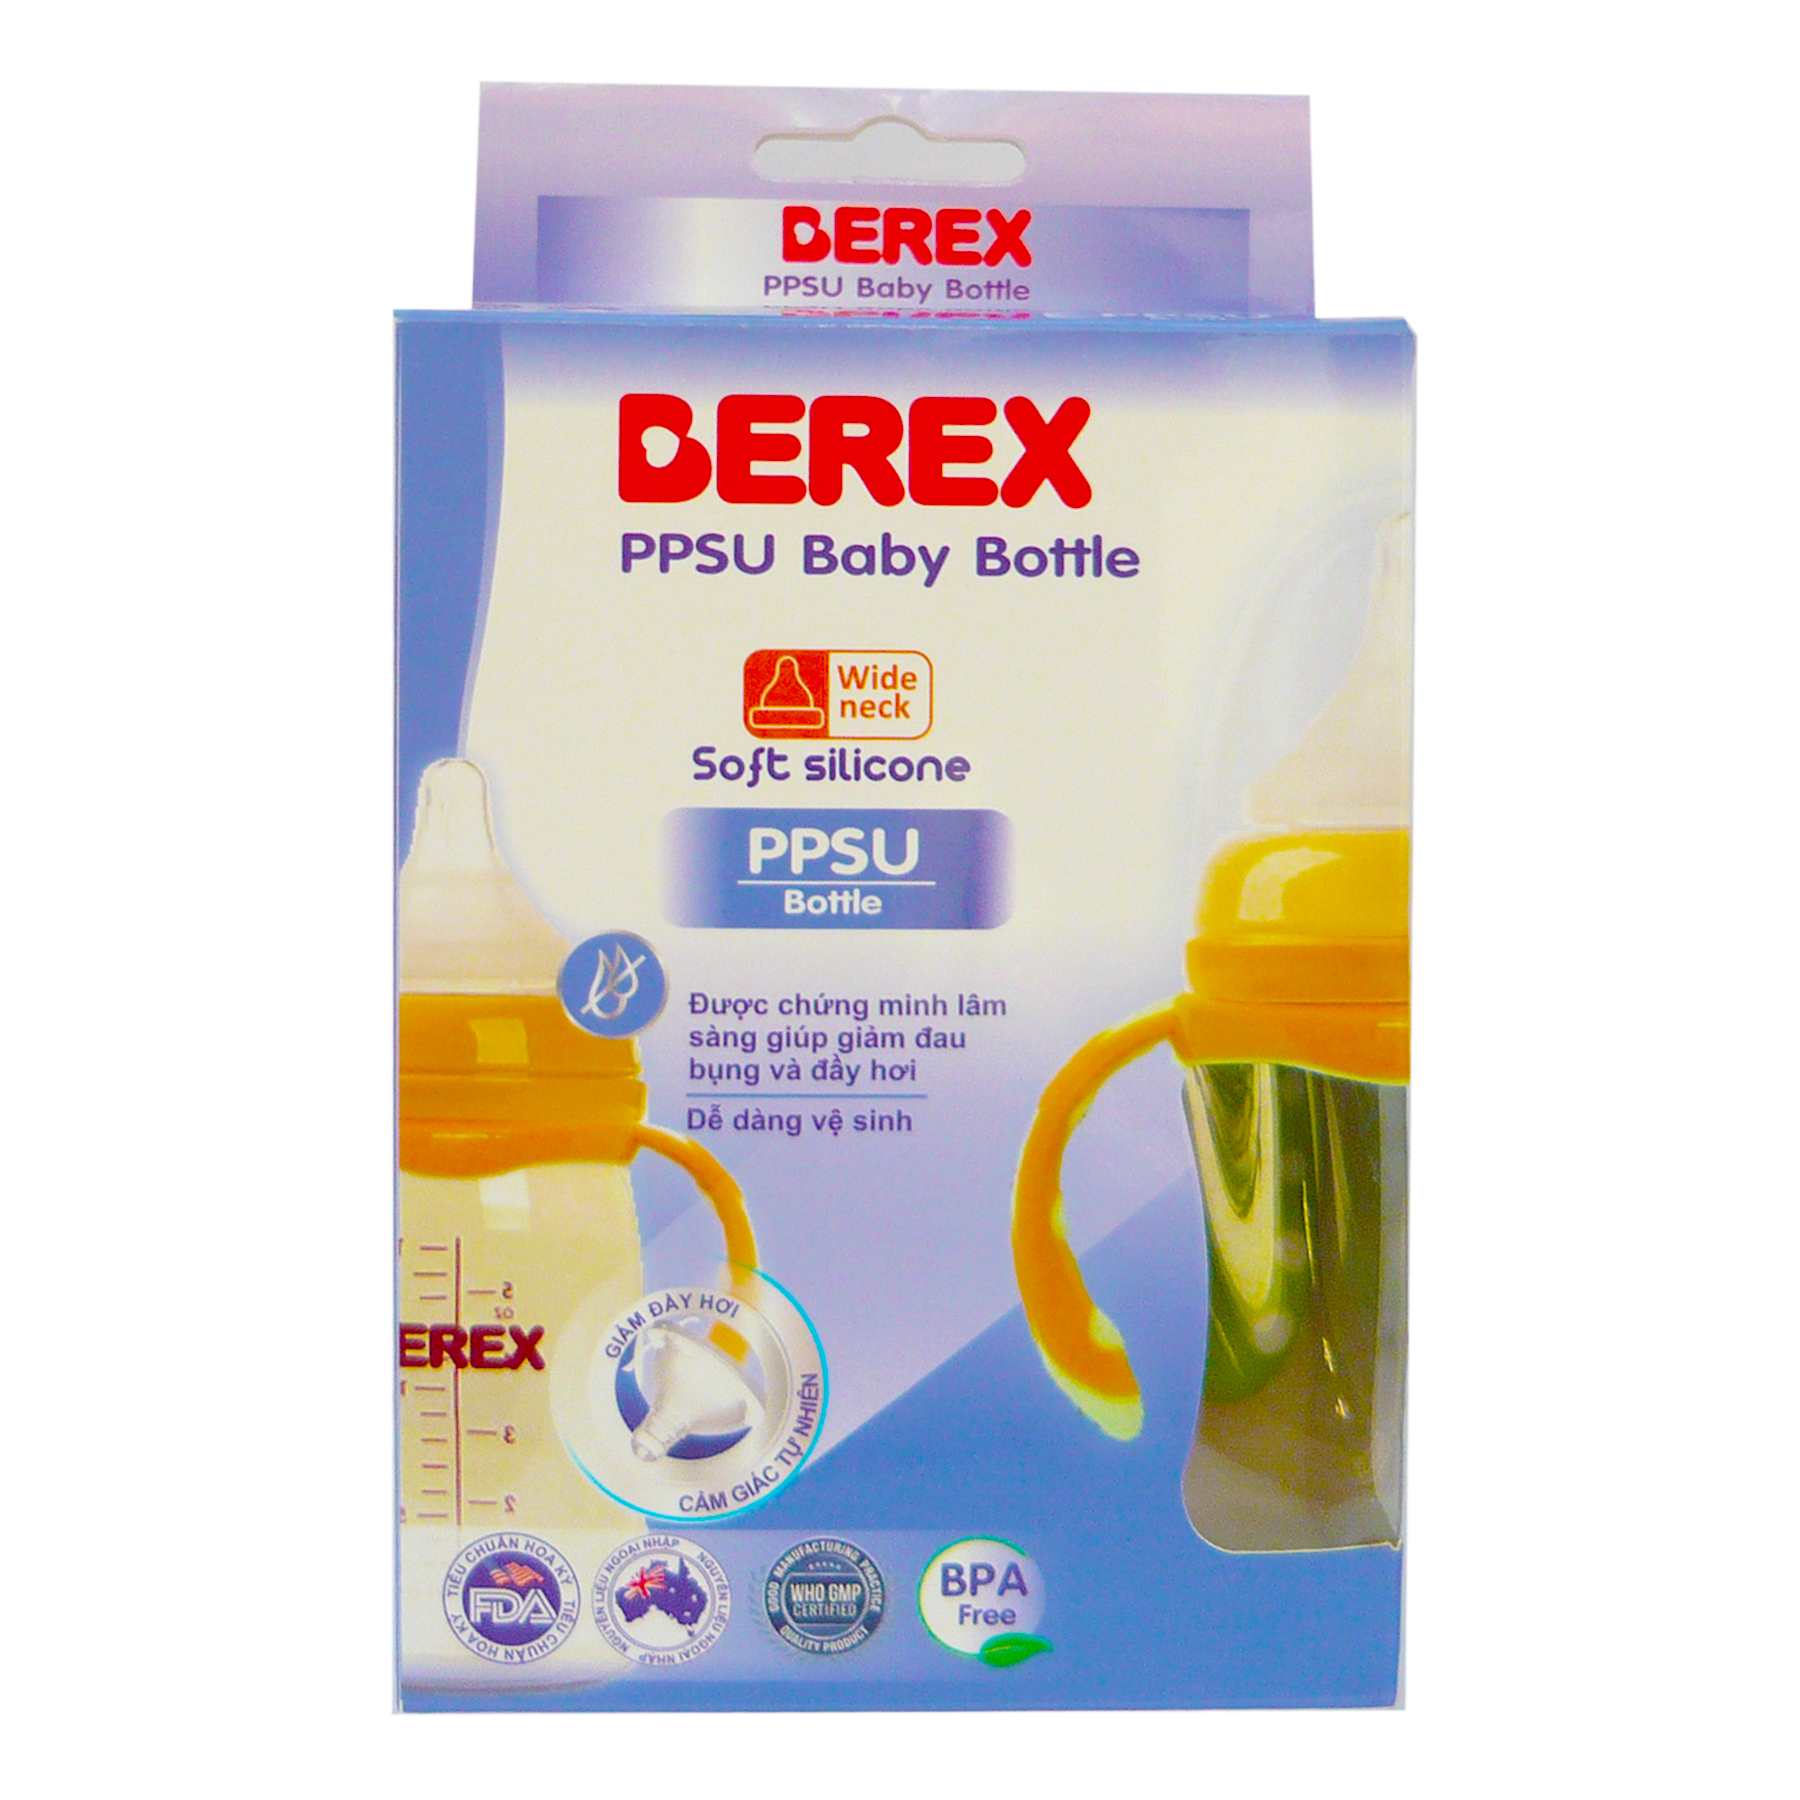 Bình sữa Nhựa PPSU PLUS Berex cổ rộng, chống đầy hơi cho bé (180ml)- có Quai mẫu ngẫu nhiên